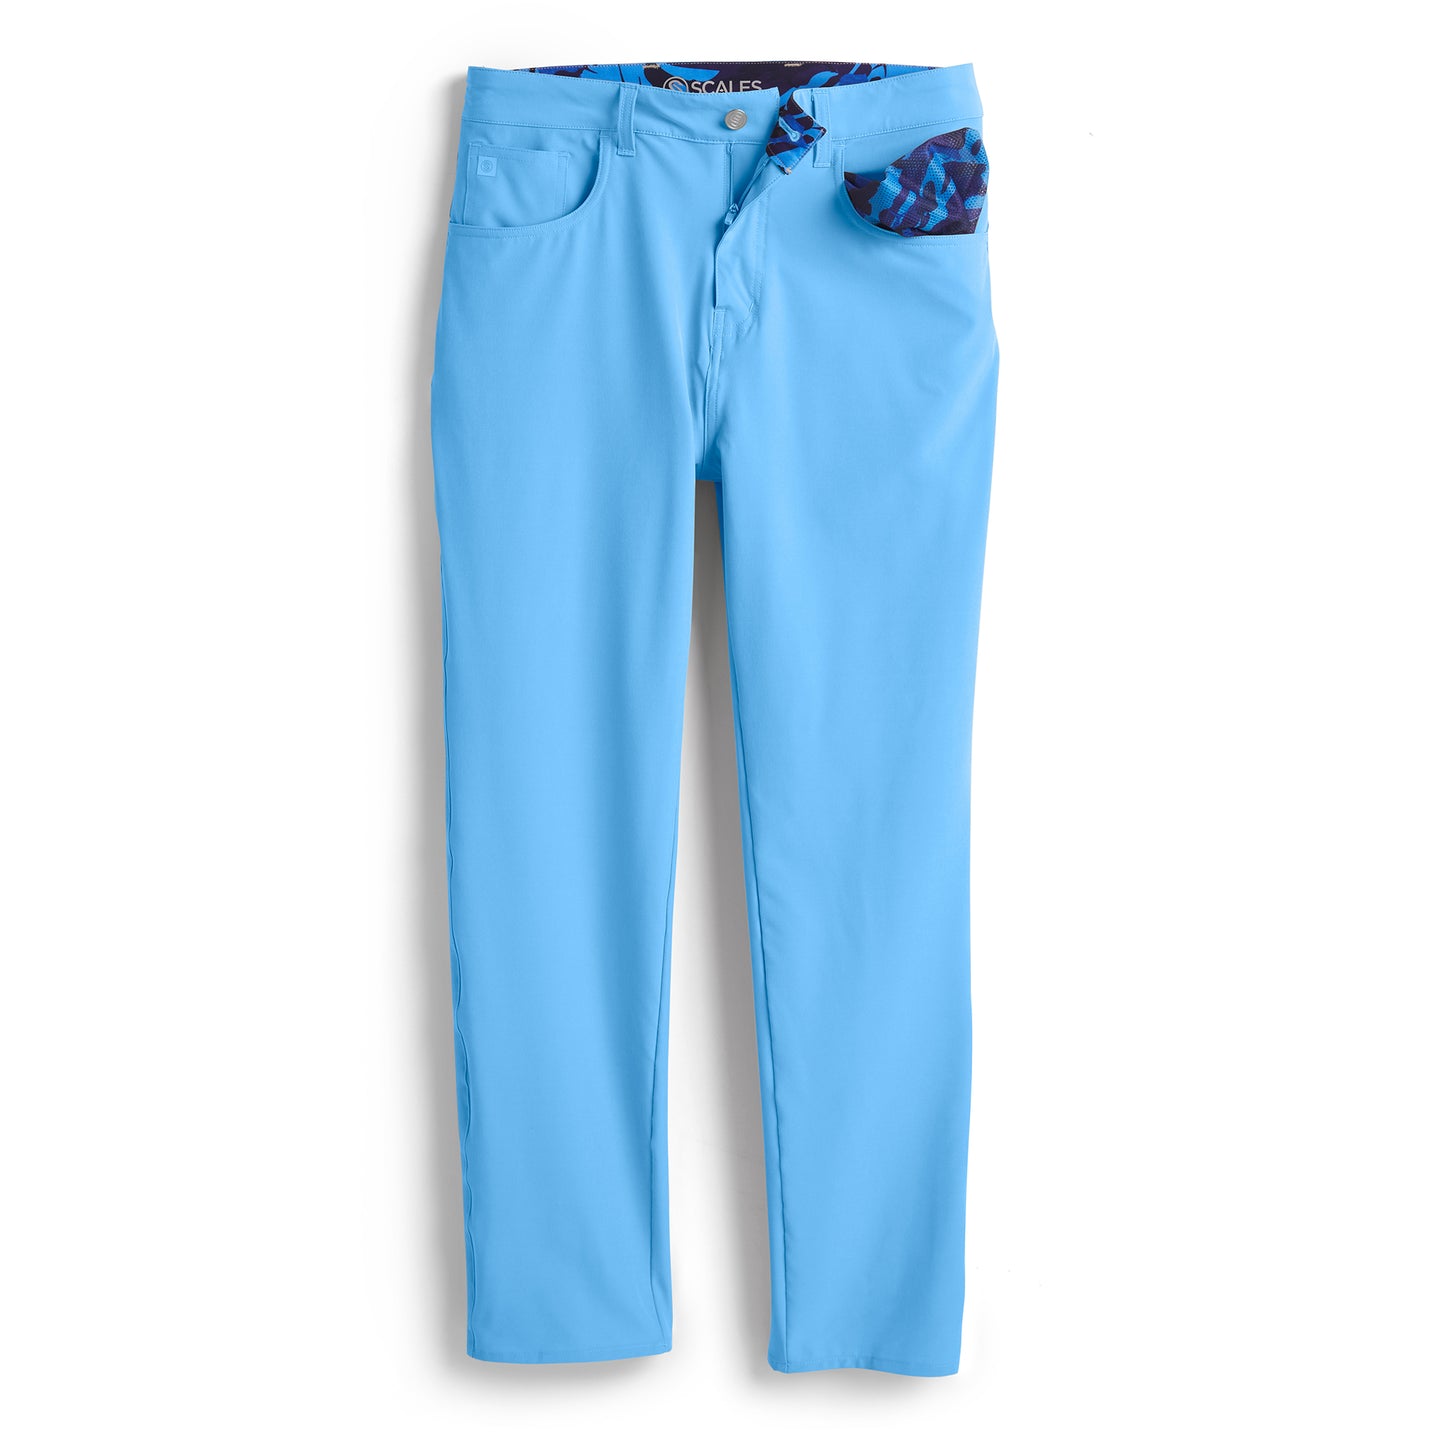 All Tides Pants - 5 Pockets (Core Blue Colors)